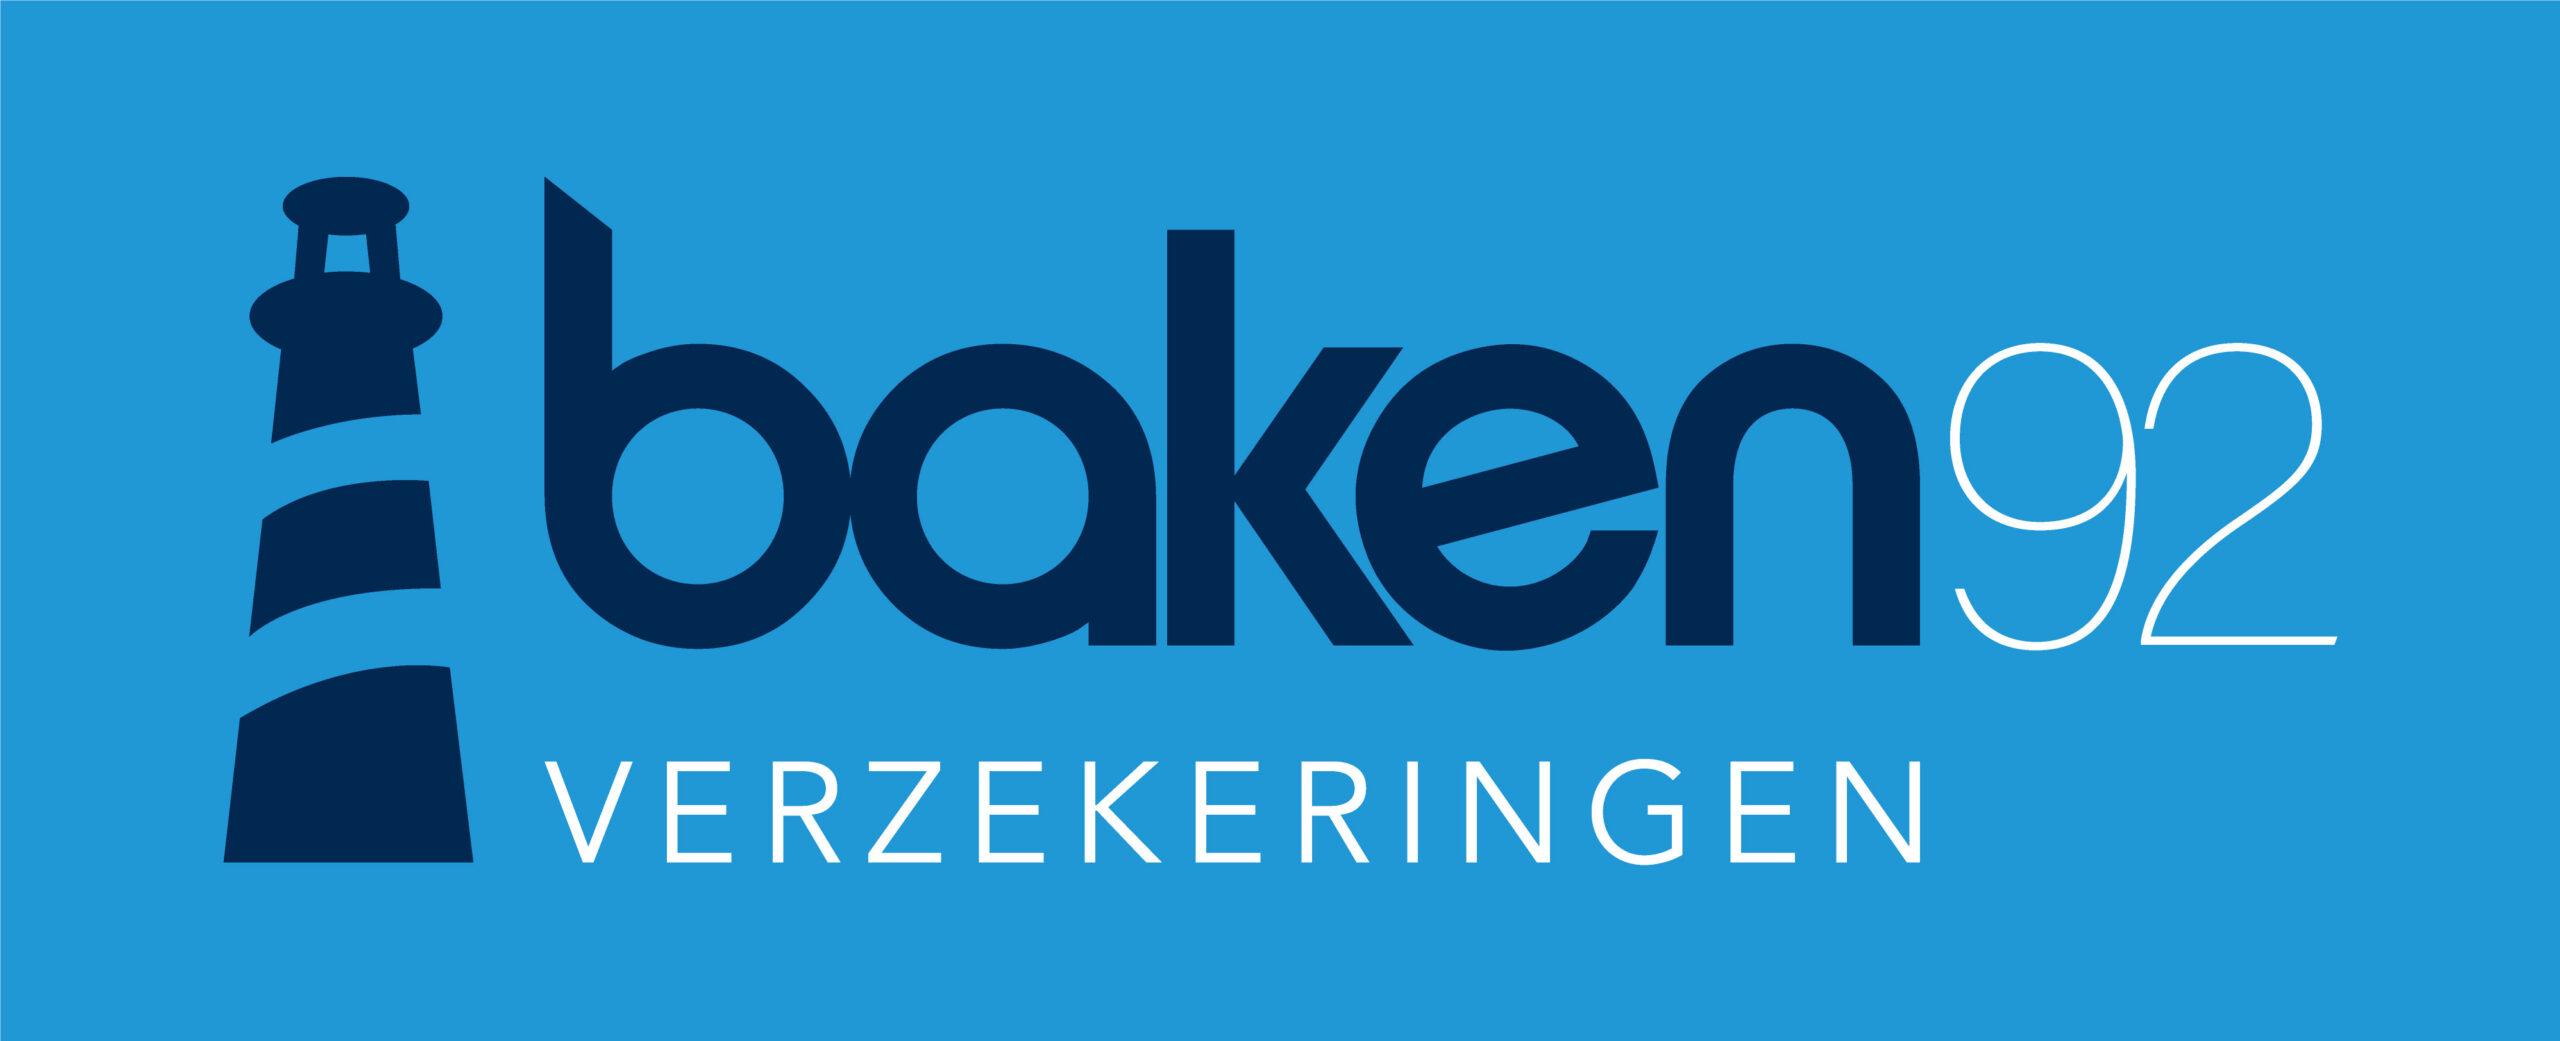 Baken 92 logo